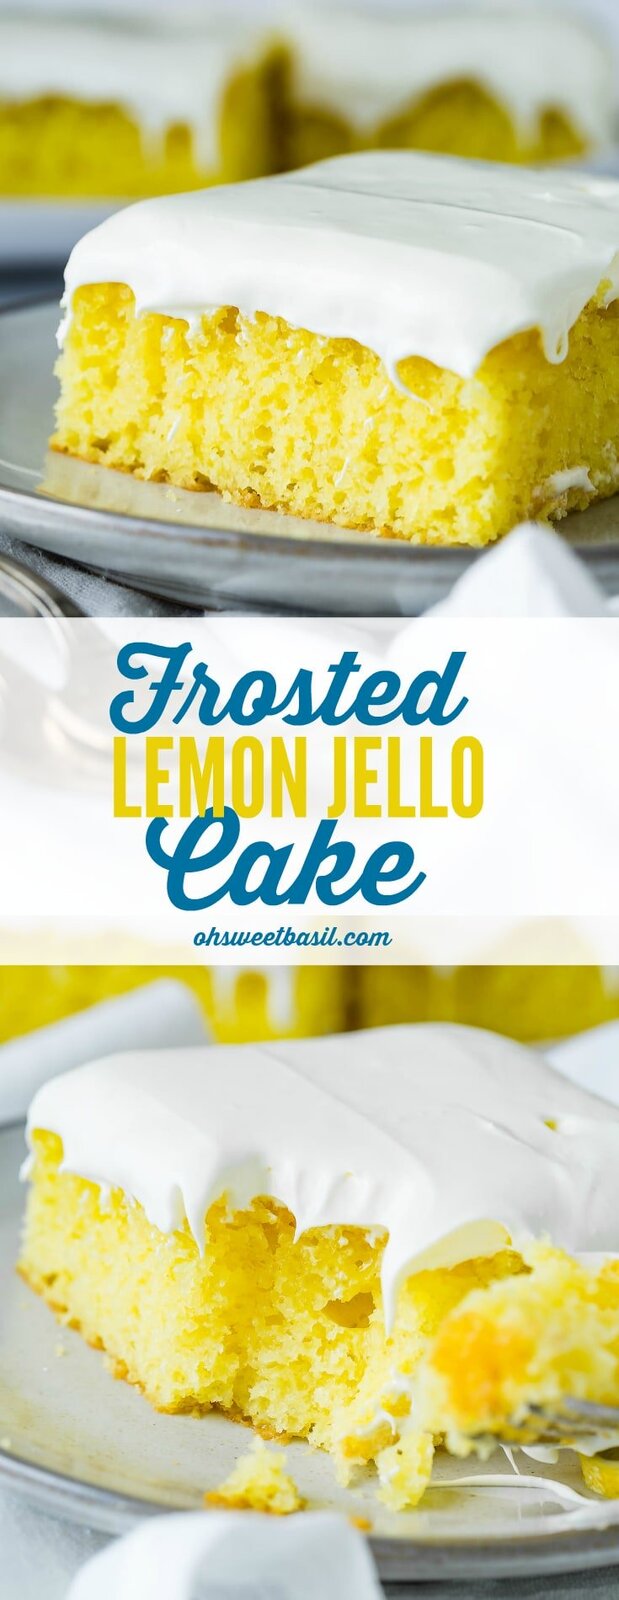 Frosted-Lemon-Jello-Cake-ohsweetbasil.com2_.jpg